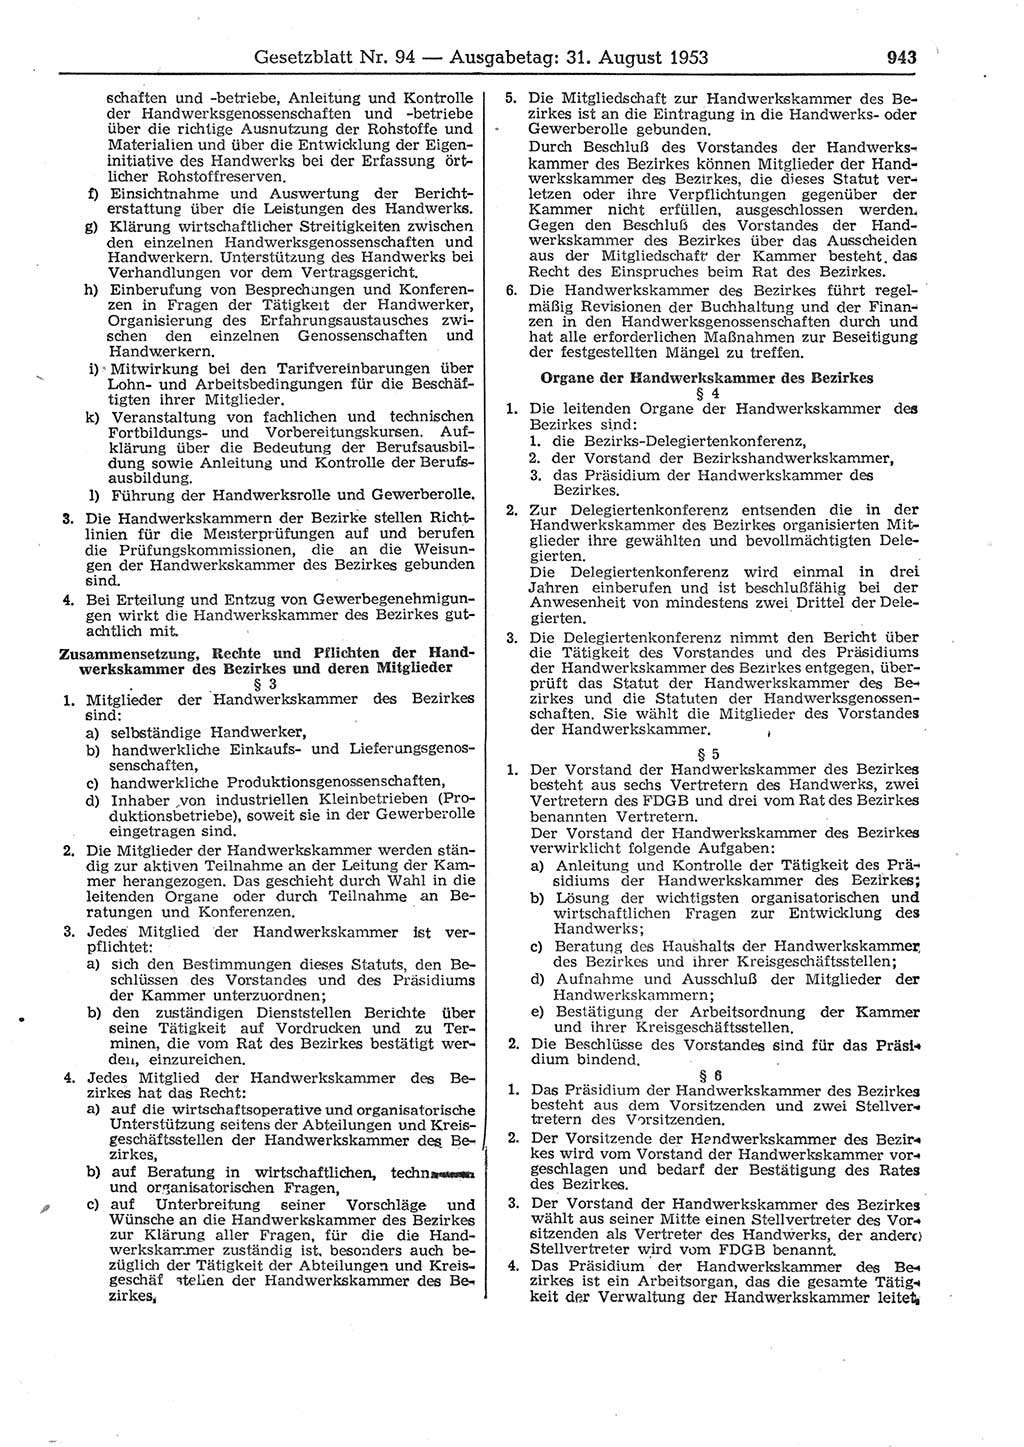 Gesetzblatt (GBl.) der Deutschen Demokratischen Republik (DDR) 1953, Seite 943 (GBl. DDR 1953, S. 943)